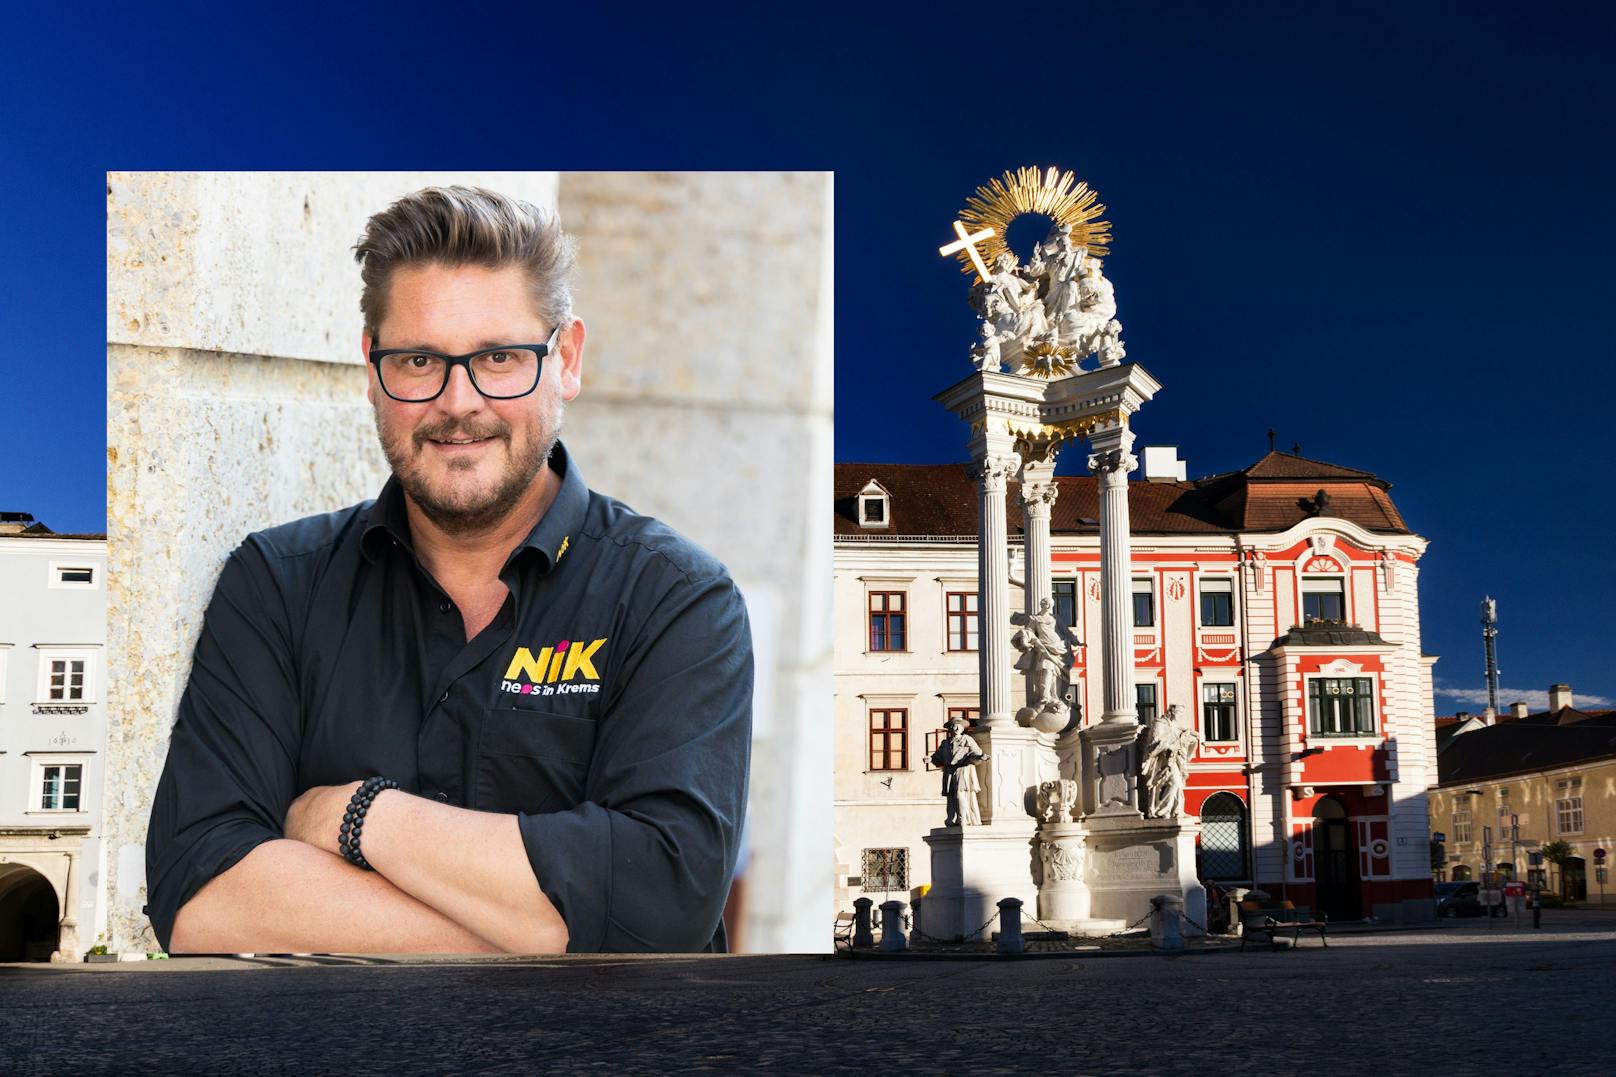 Neos wollen Förderung für Altbau-Wohnungen in Krems